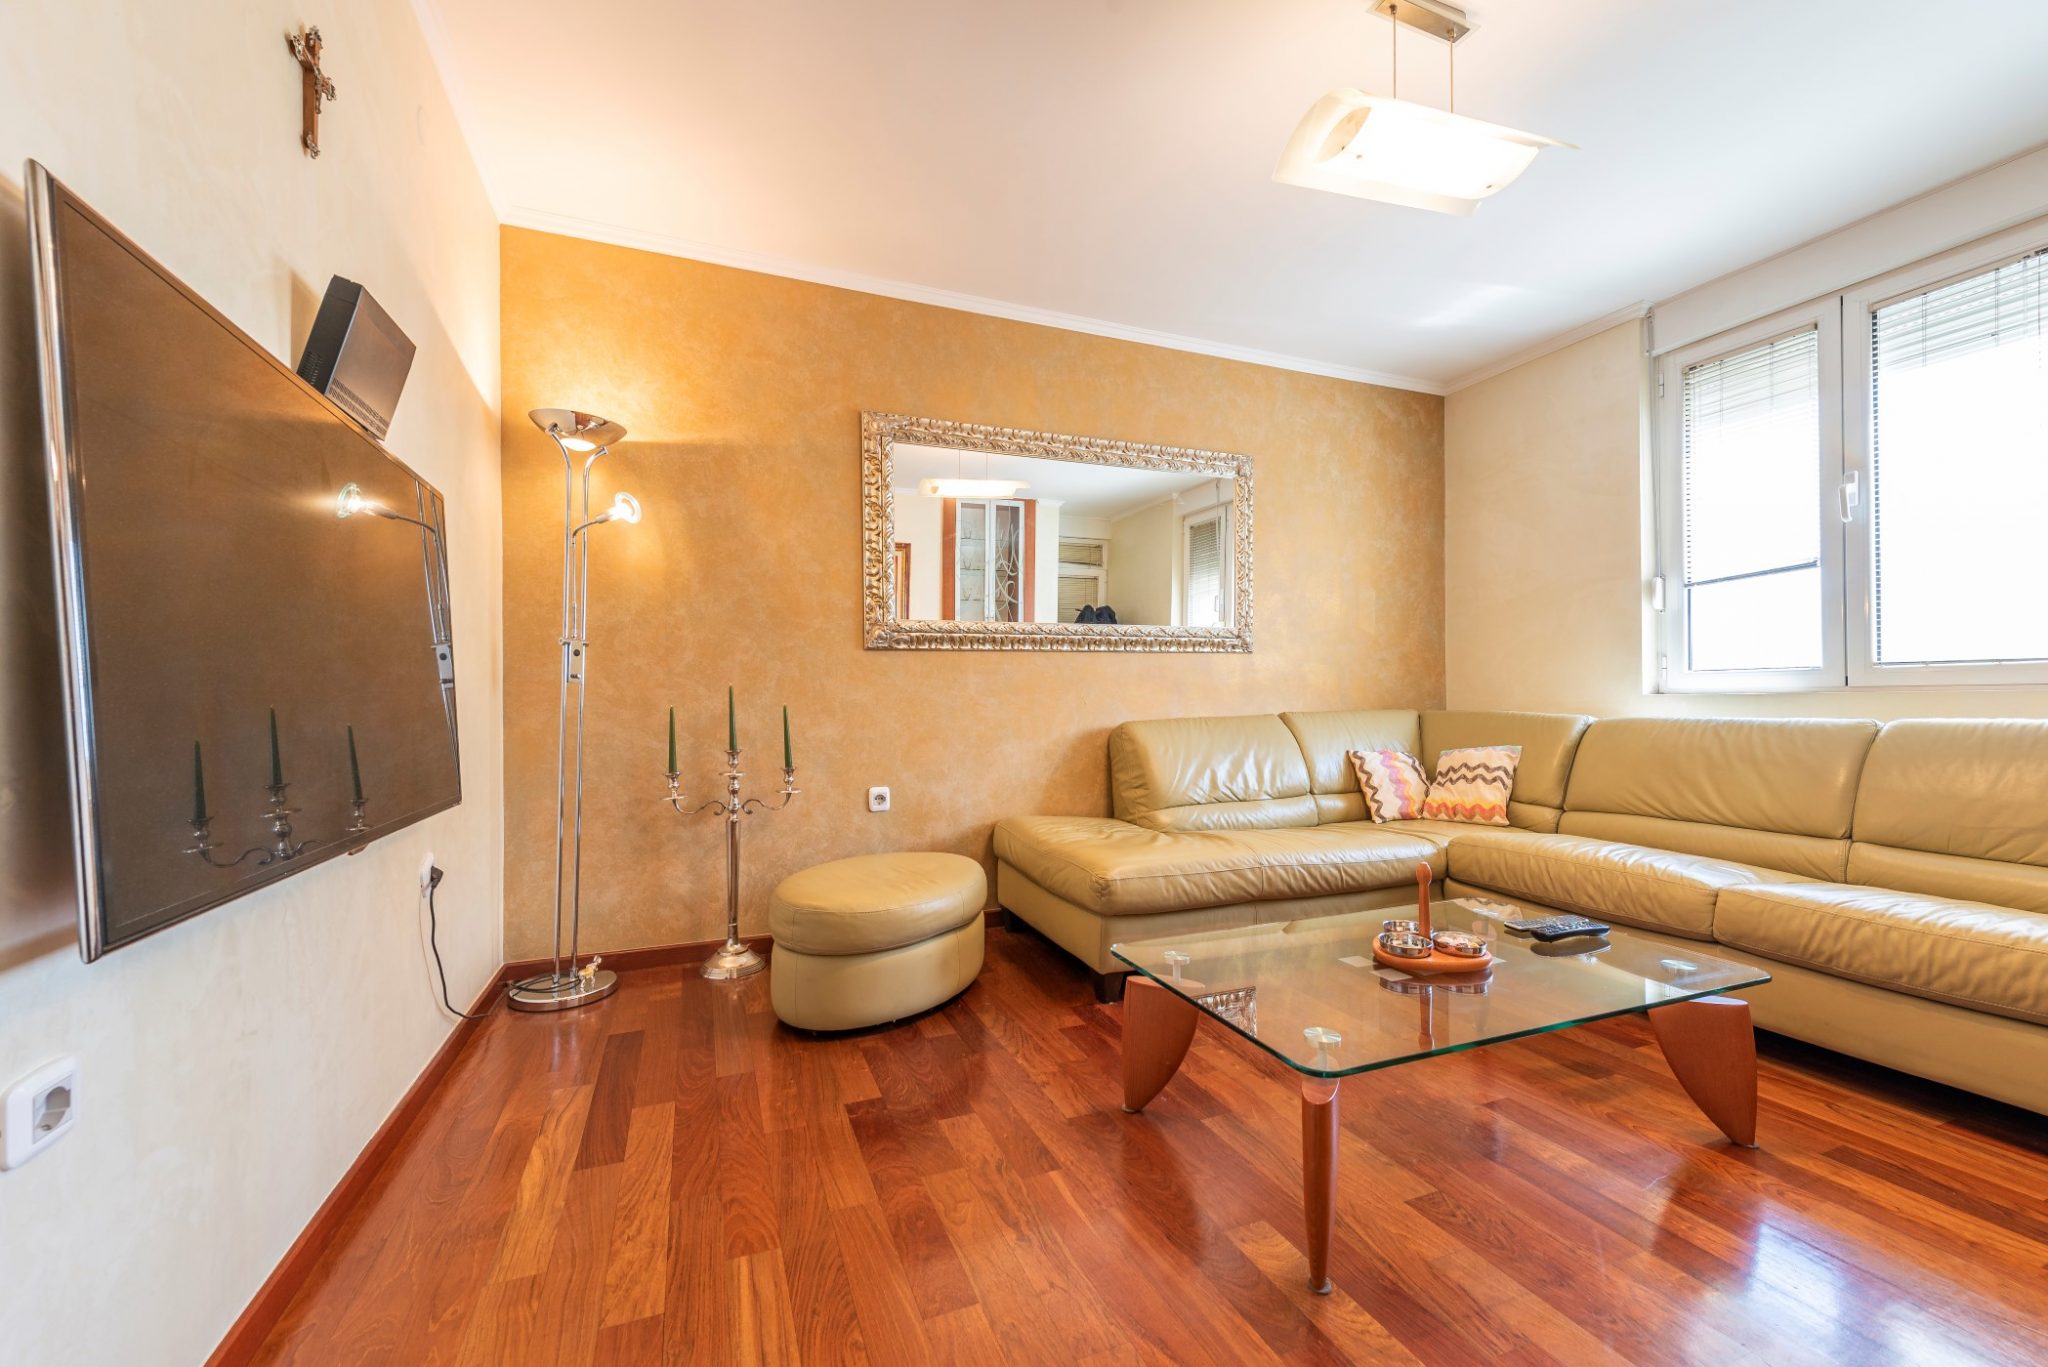 Budva, Mediteranska ulica – luksuzno renoviran jednosoban apartman